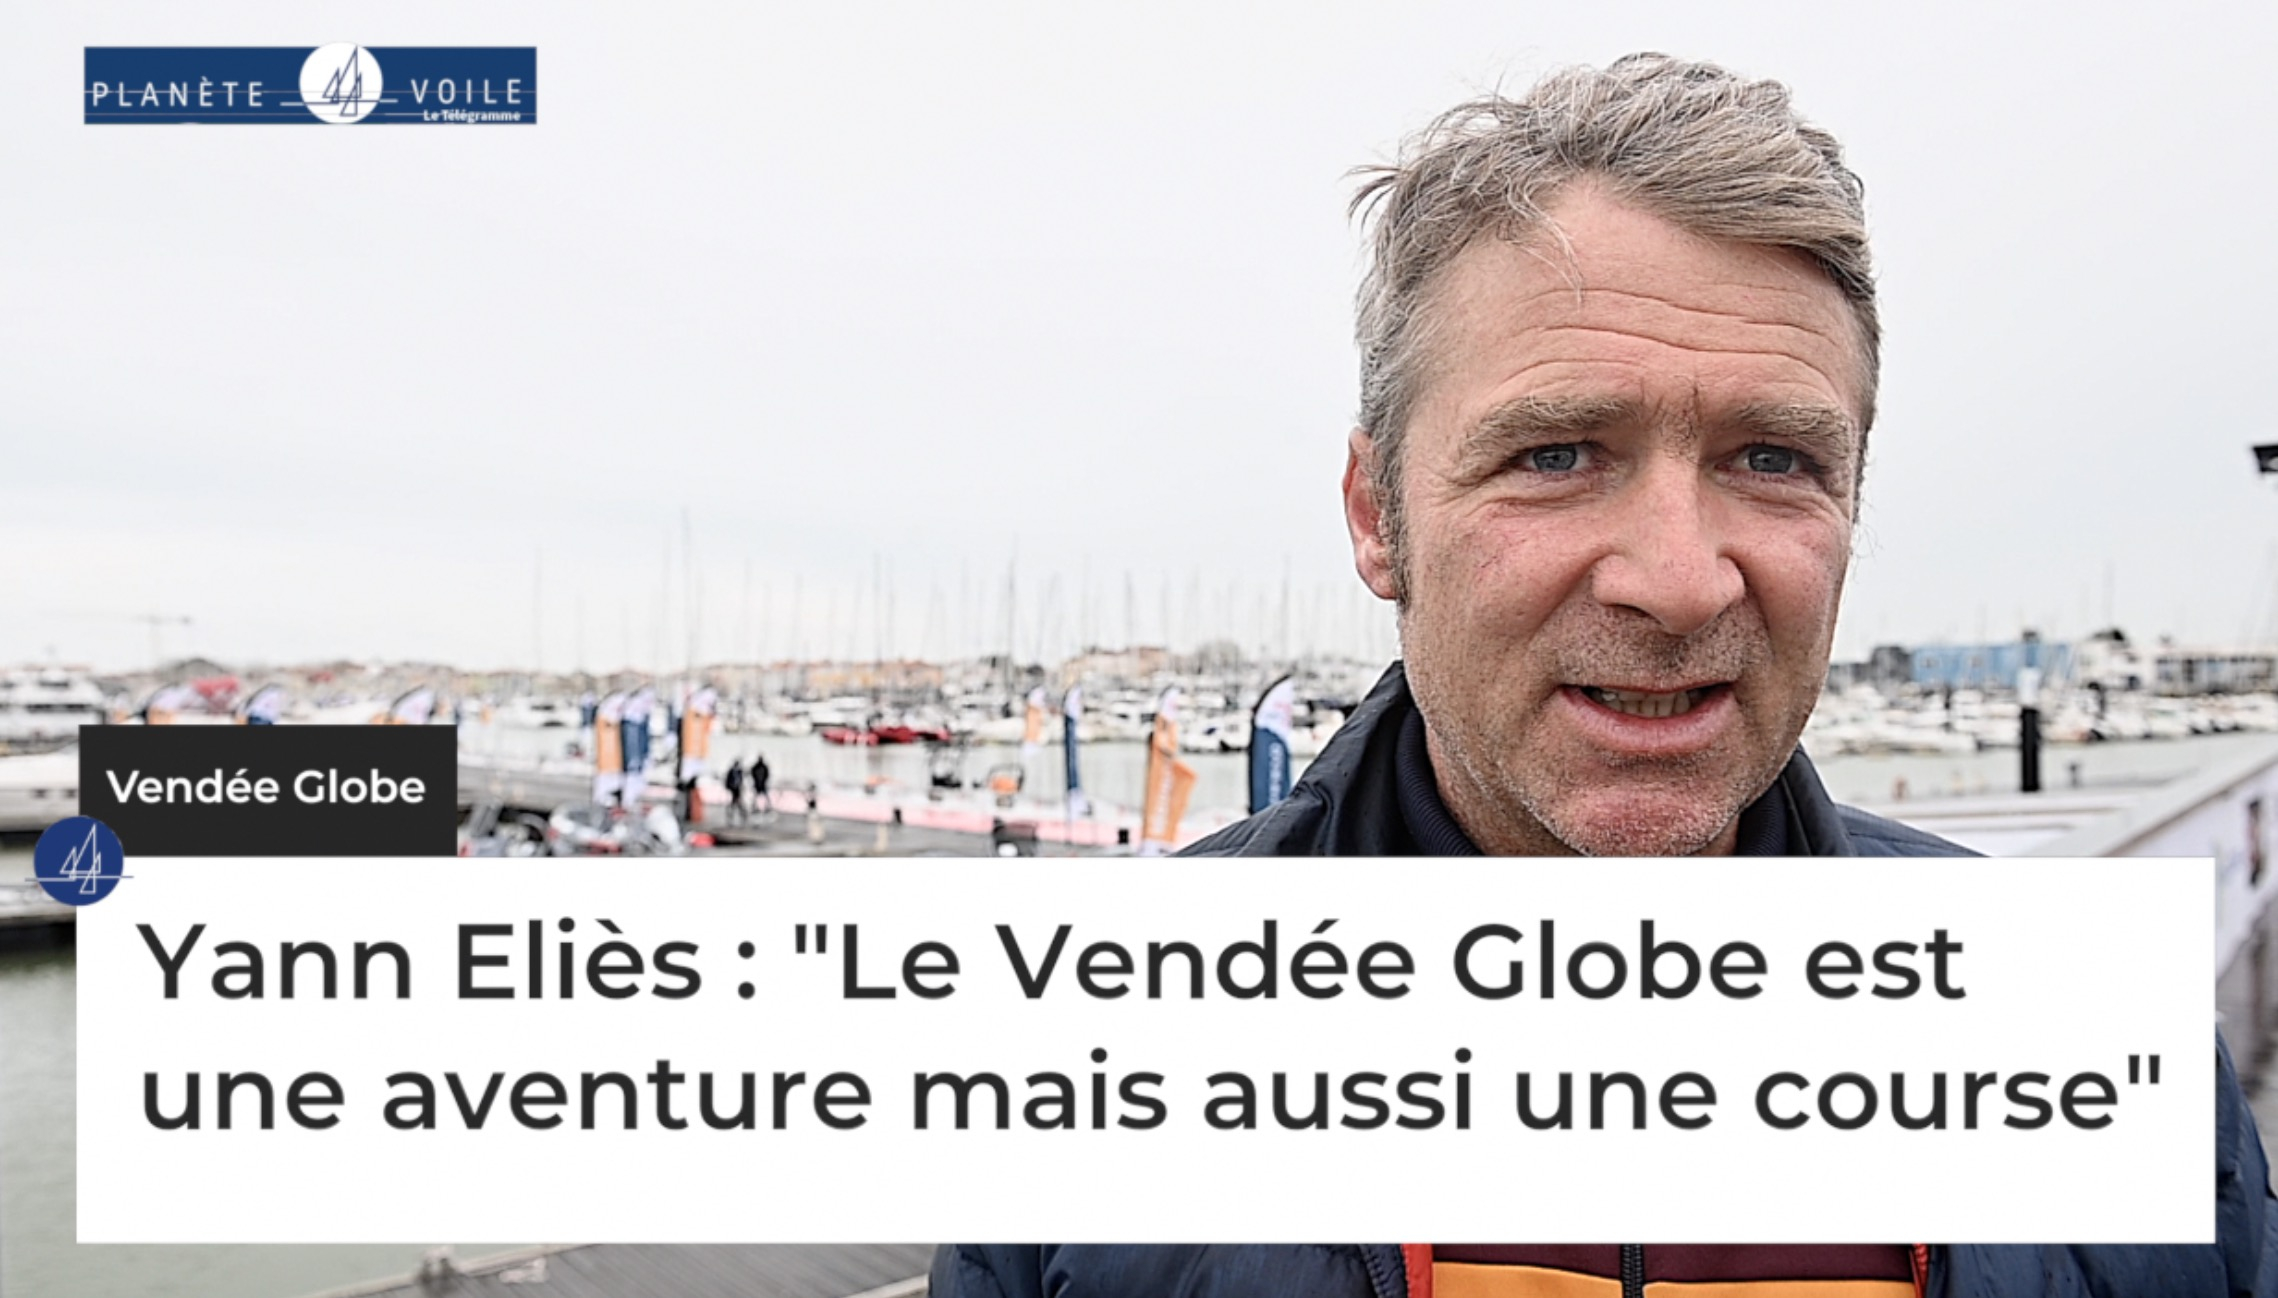 Vendée Globe. Yann Eliès : "Le Vendée Globe est une aventure mais aussi une course" (Le Télégramme)